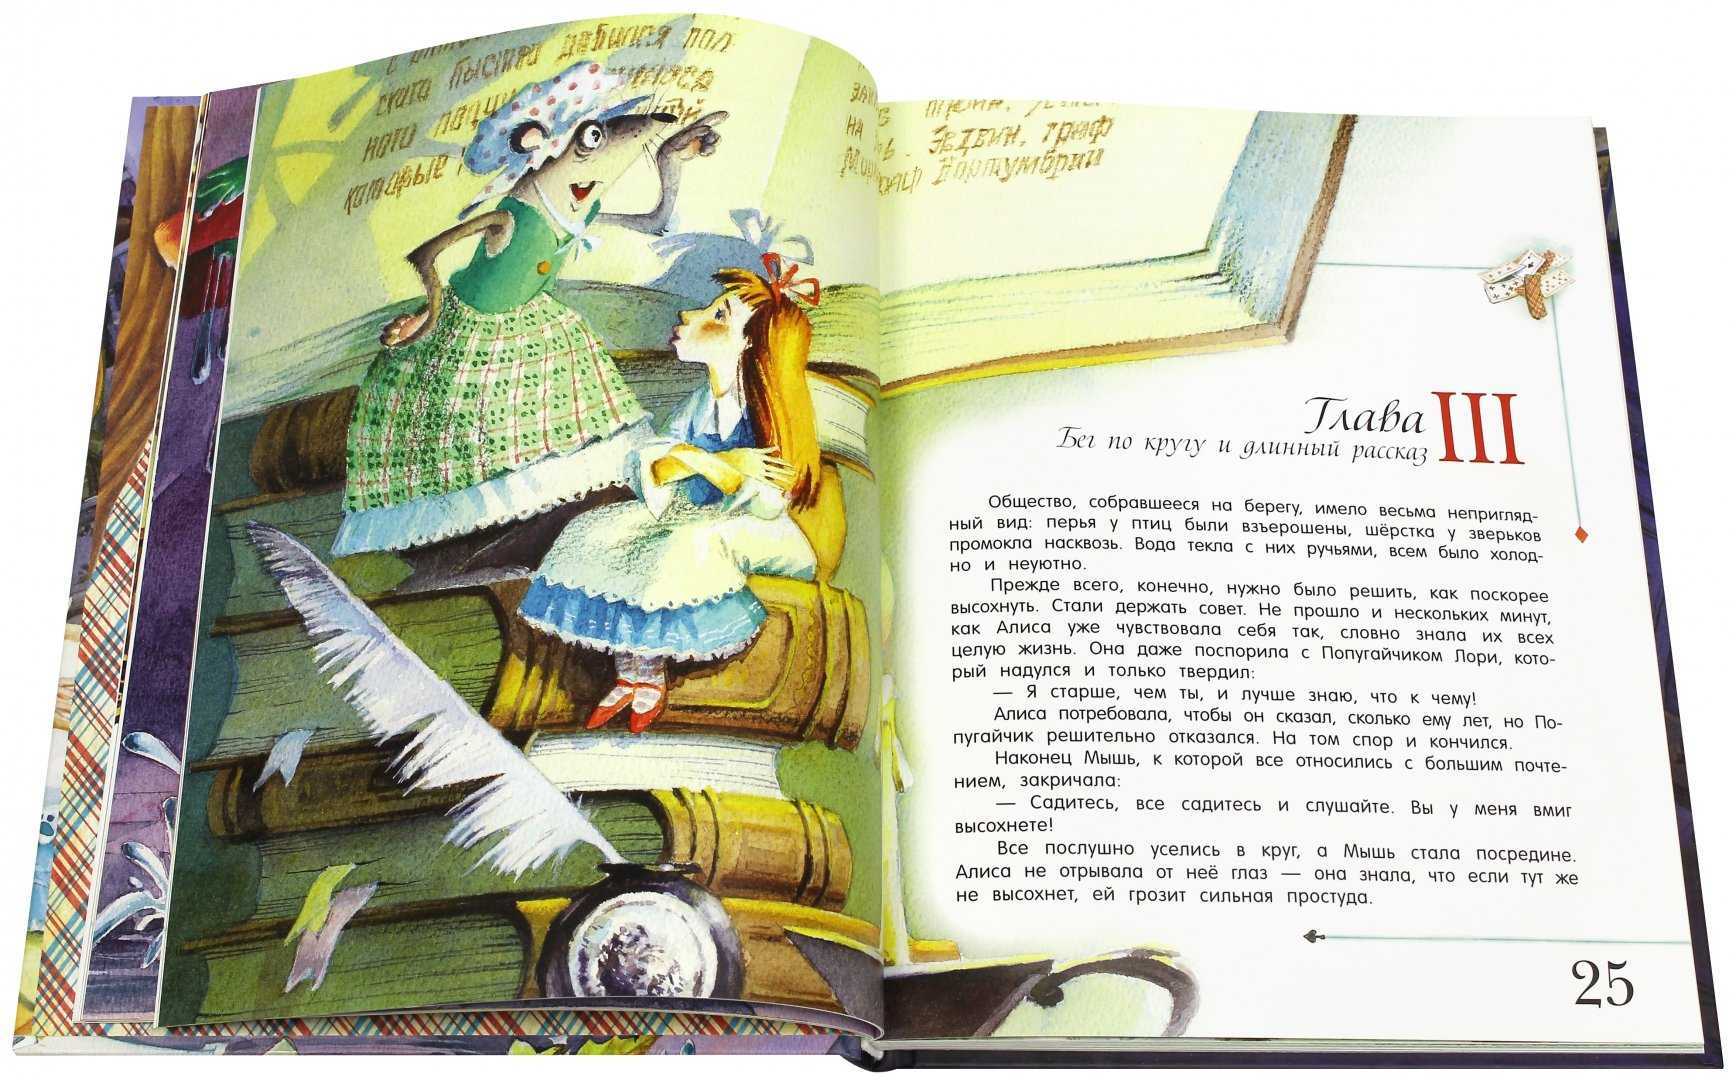 Читать рассказ алис. Кэрролл Льюис "Алиса в стране чудес". Л Кэрролл Алиса в стране чудес иллюстрации. Иллюстрации из книги Алиса в стране чудес Льюис Кэрролл. Алиса в стране чудес иллюстрации Кэрролла.